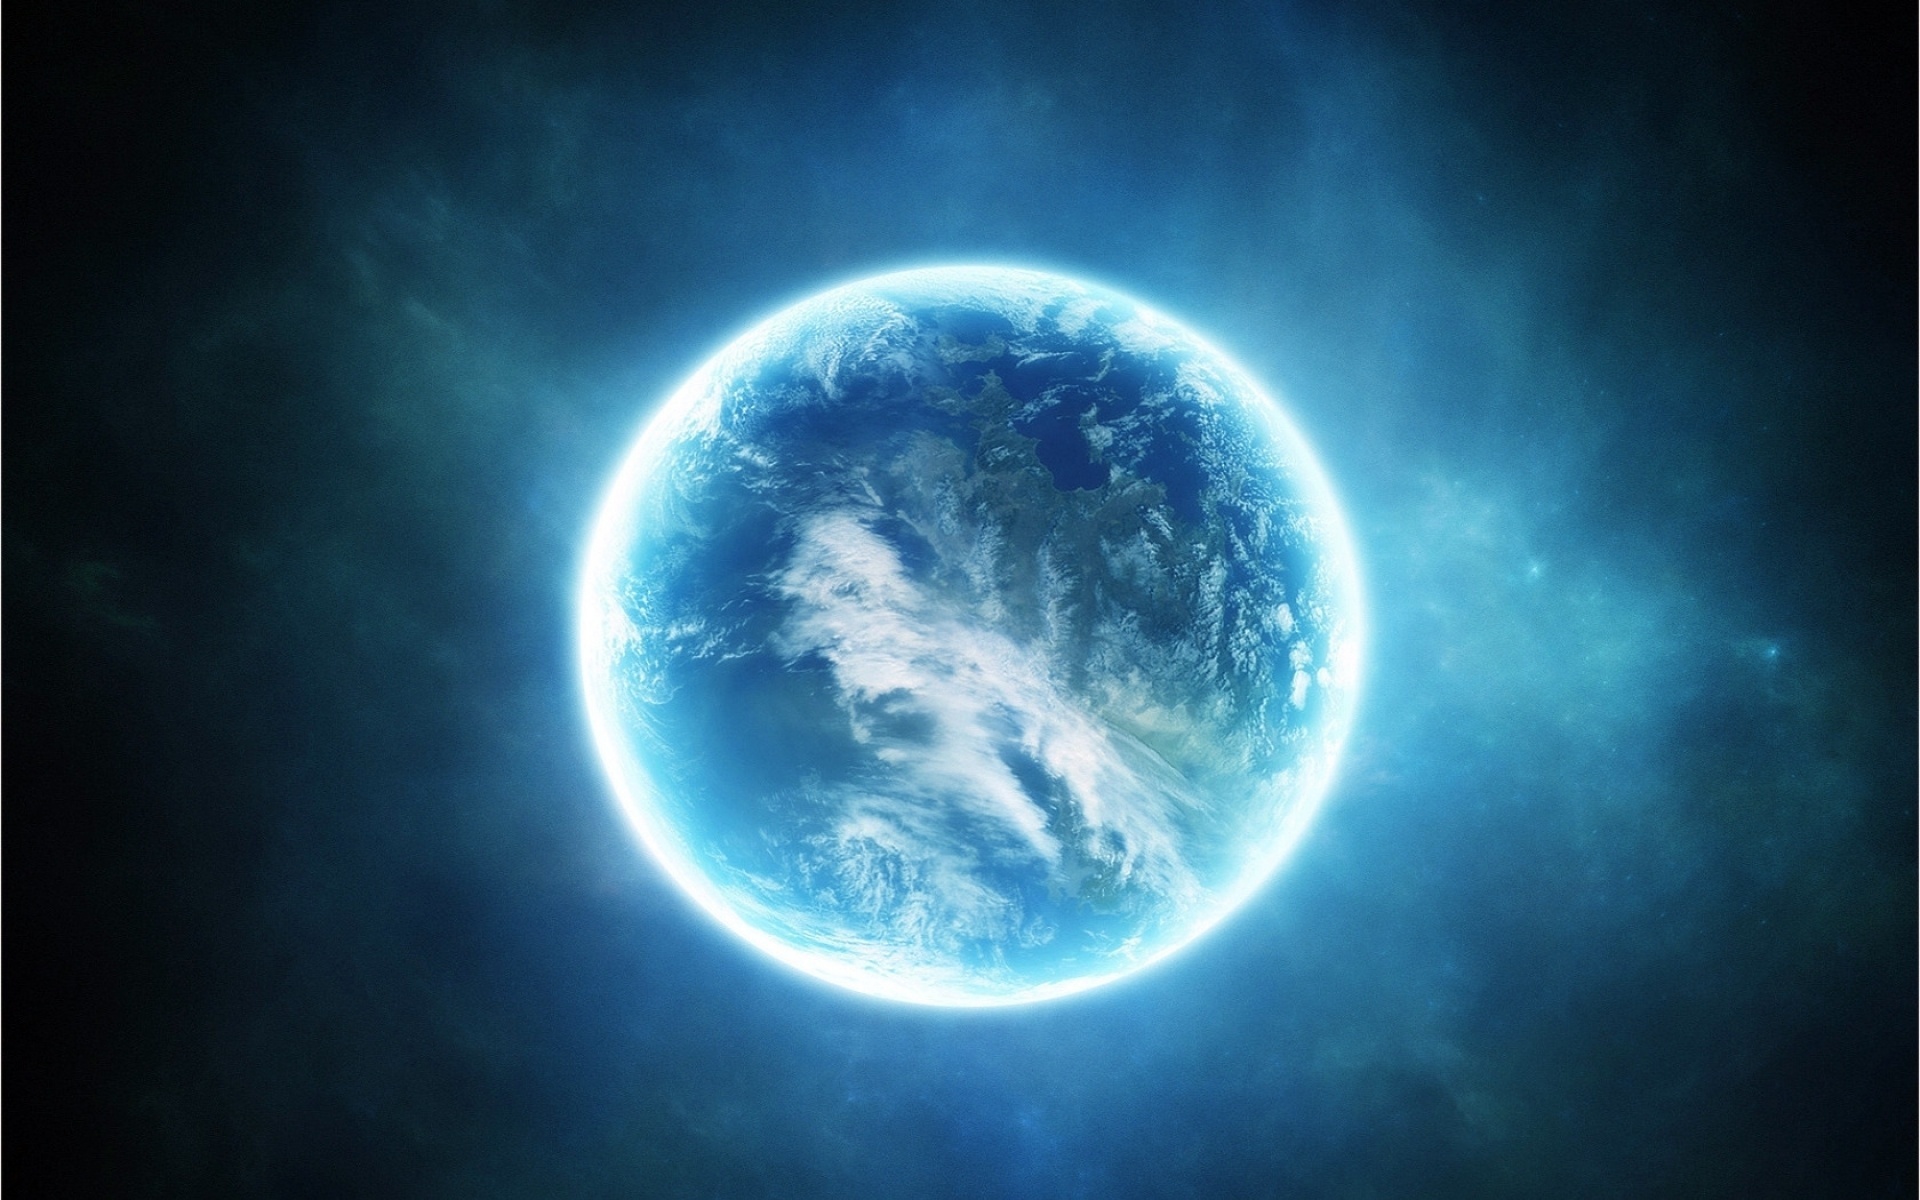 science fiction, Planet, light, blue